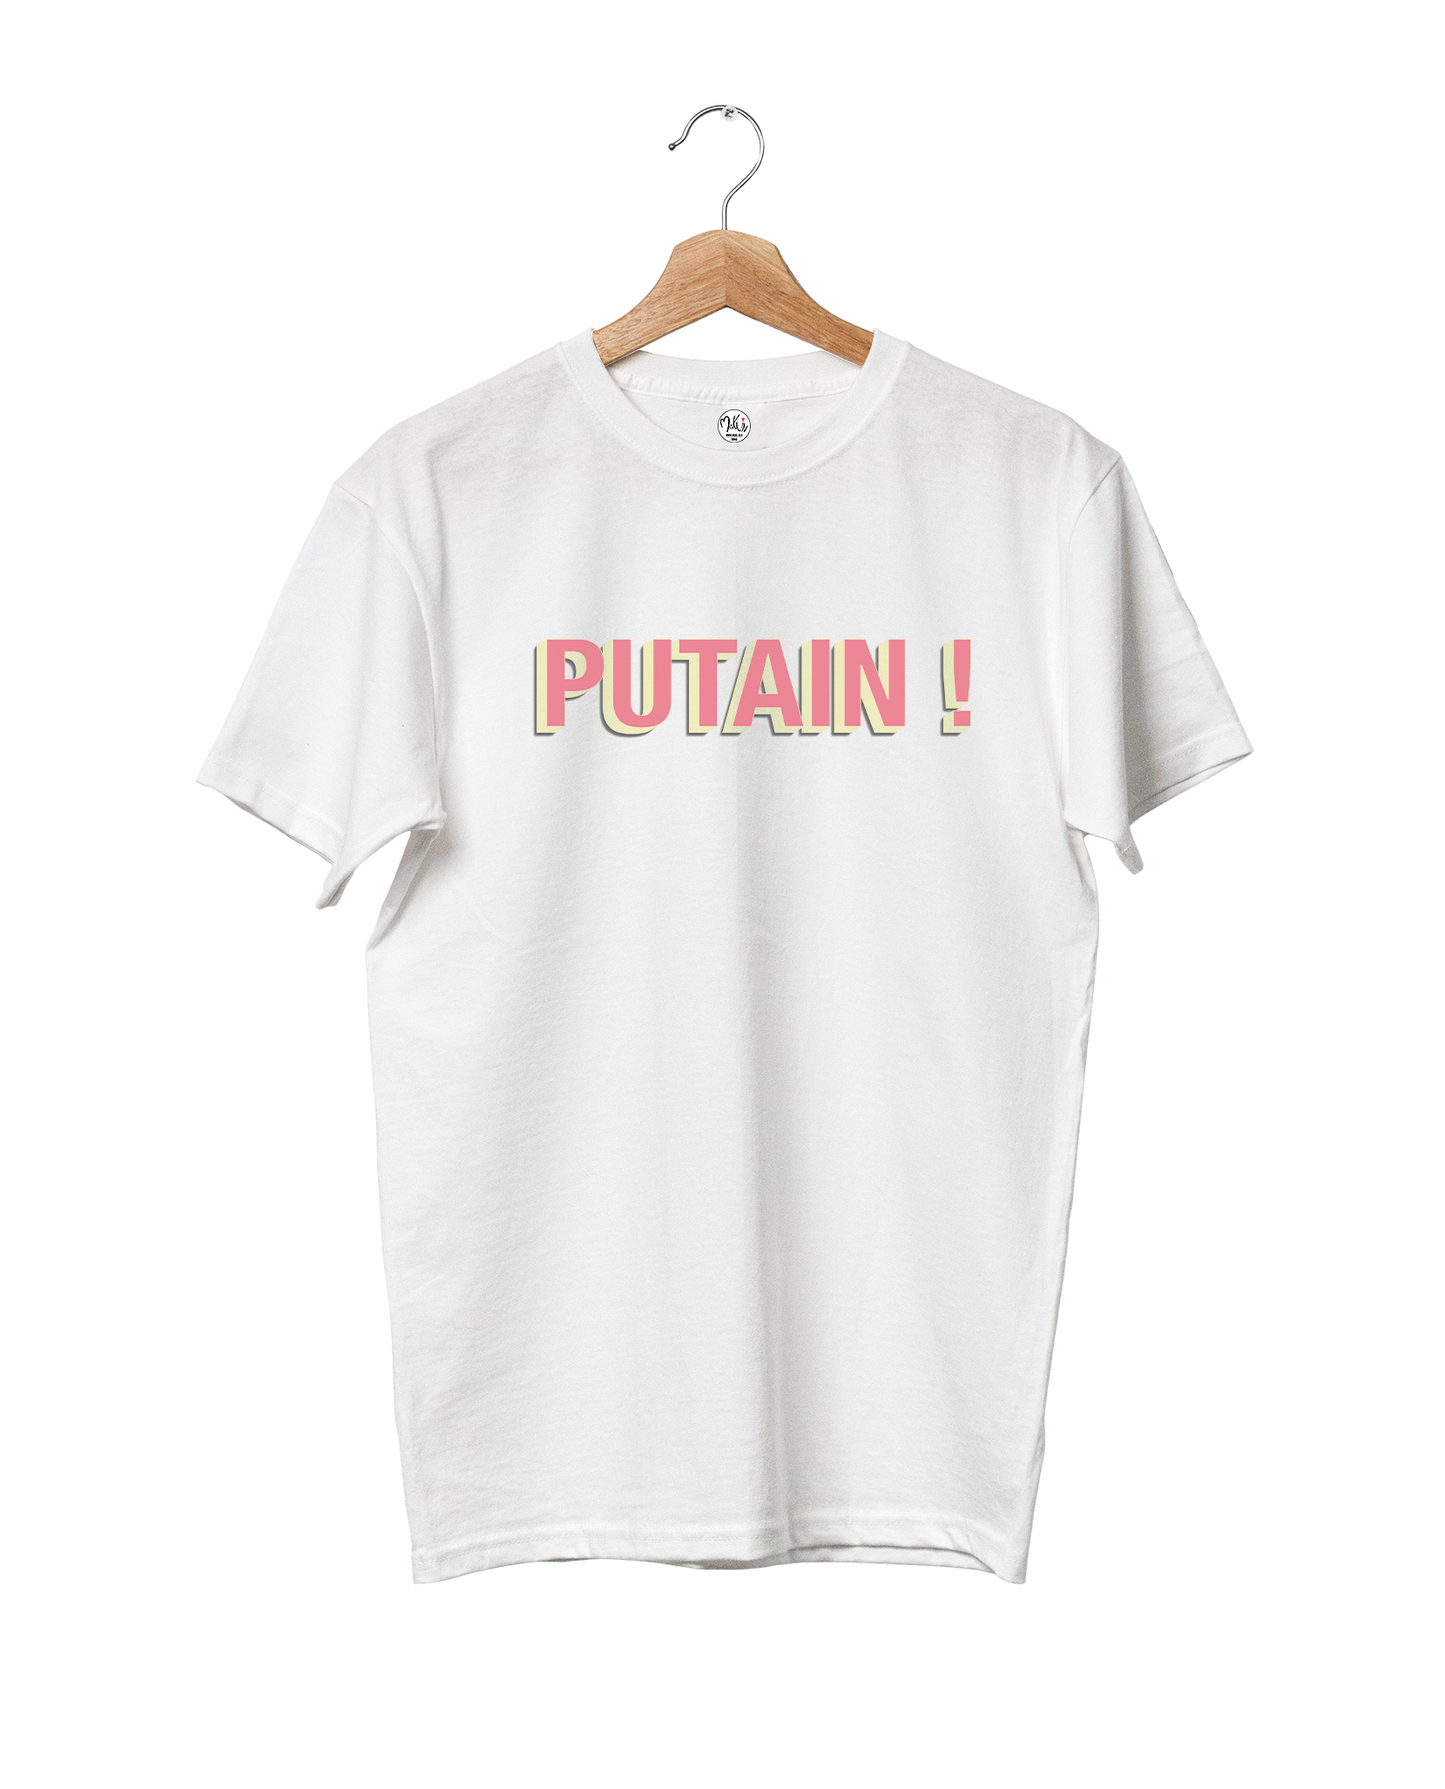 T-shirt PUTAIN !